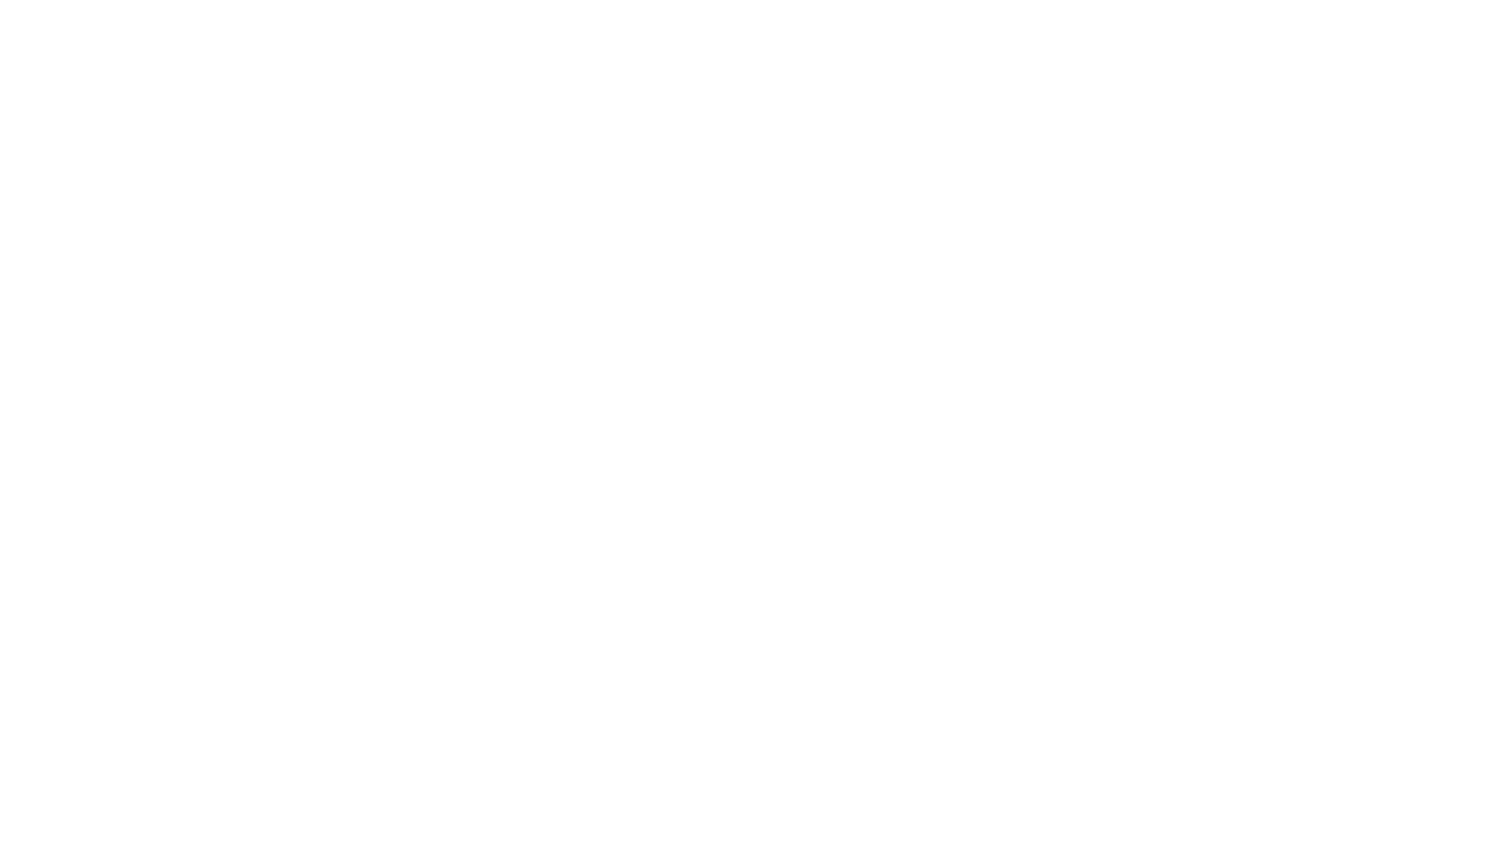 INDIE DJ GTA